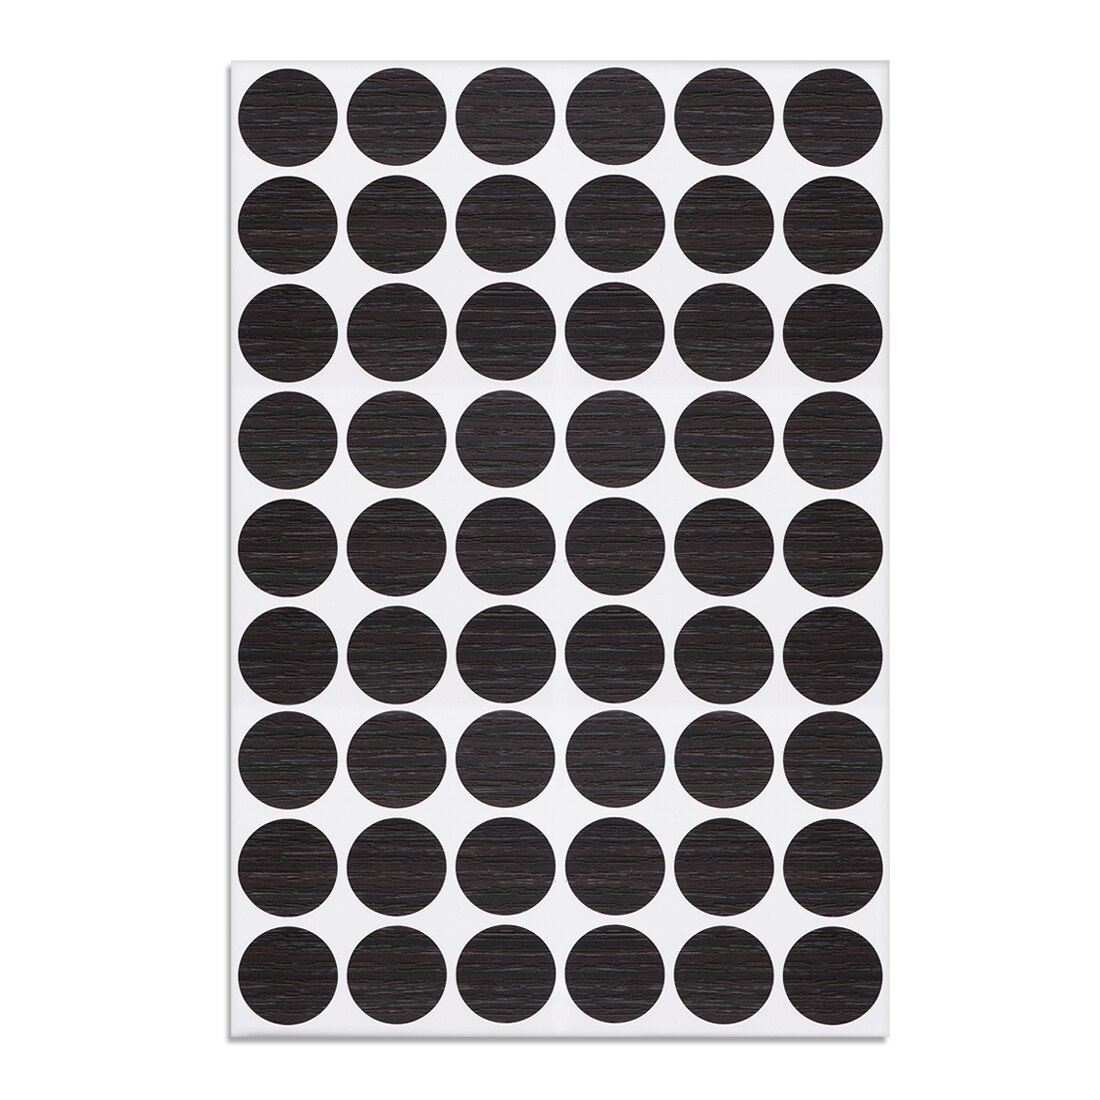 Uxcell 54 In 1 Zwarte Walnoot Zelfklevende Schroef Gat Stickers,1-Tafel Zelfklevende Schroef Covers Caps Stofdicht Sticker 21Mm